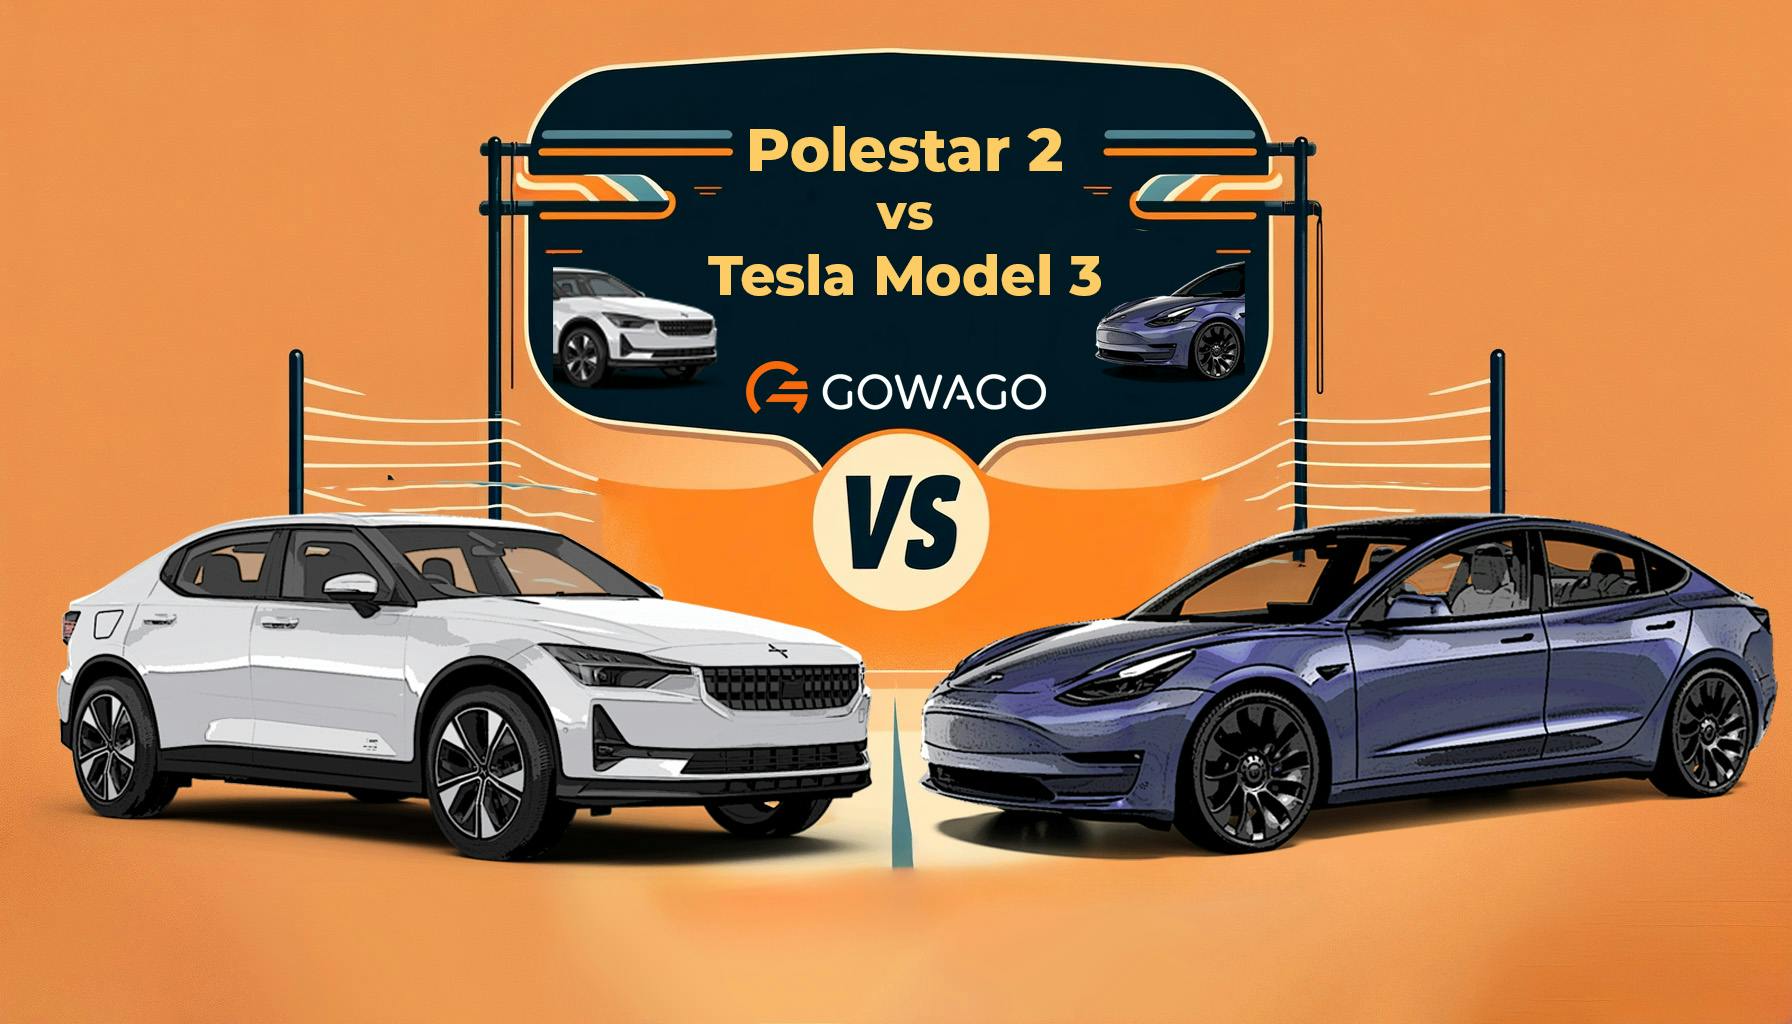 blog item card - Tesla Model 3 oder Polestar 2? Für welches Elektroauto solltest du dich entscheiden? gowago gibt dir einen Überblick!